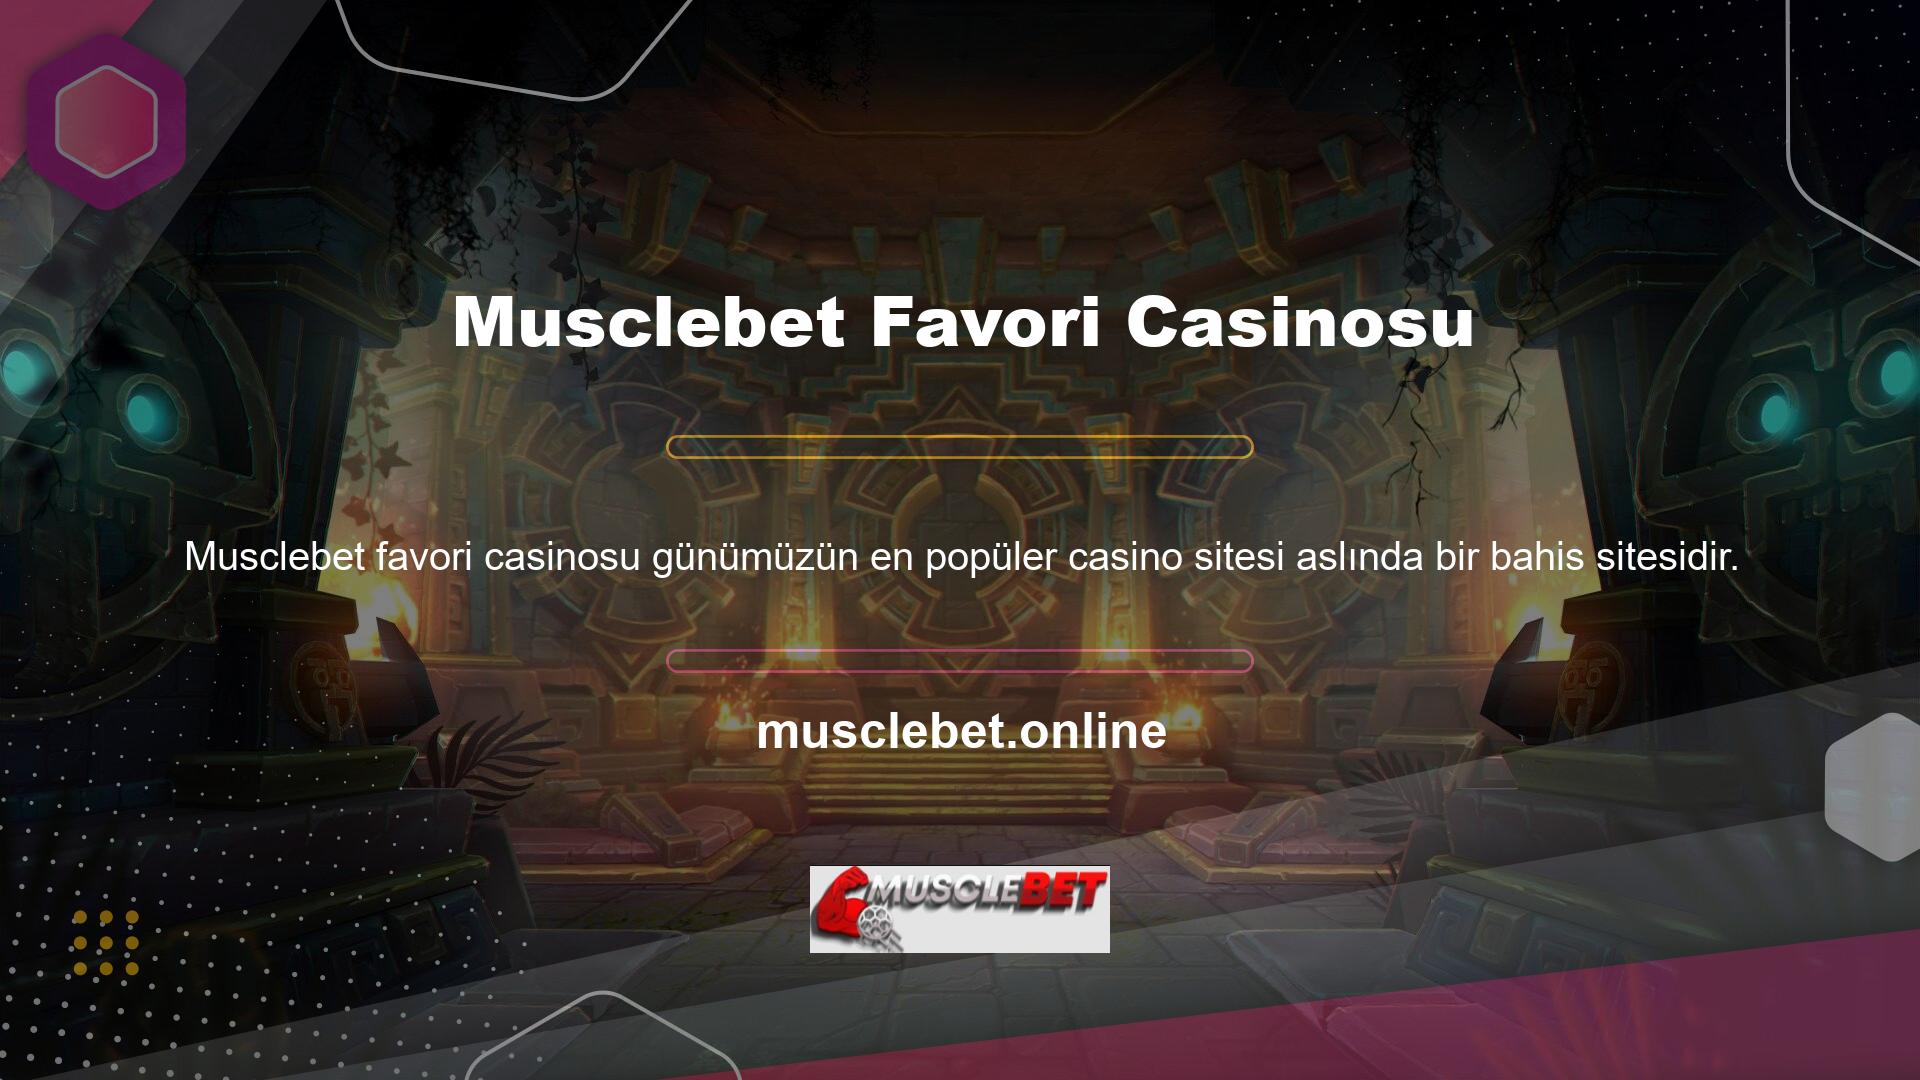 Ayrıca yalnızca aşağıdakiler gibi casino oyunları sunan siteleri de görebilirsiniz: Musclebet en popüler casinodur